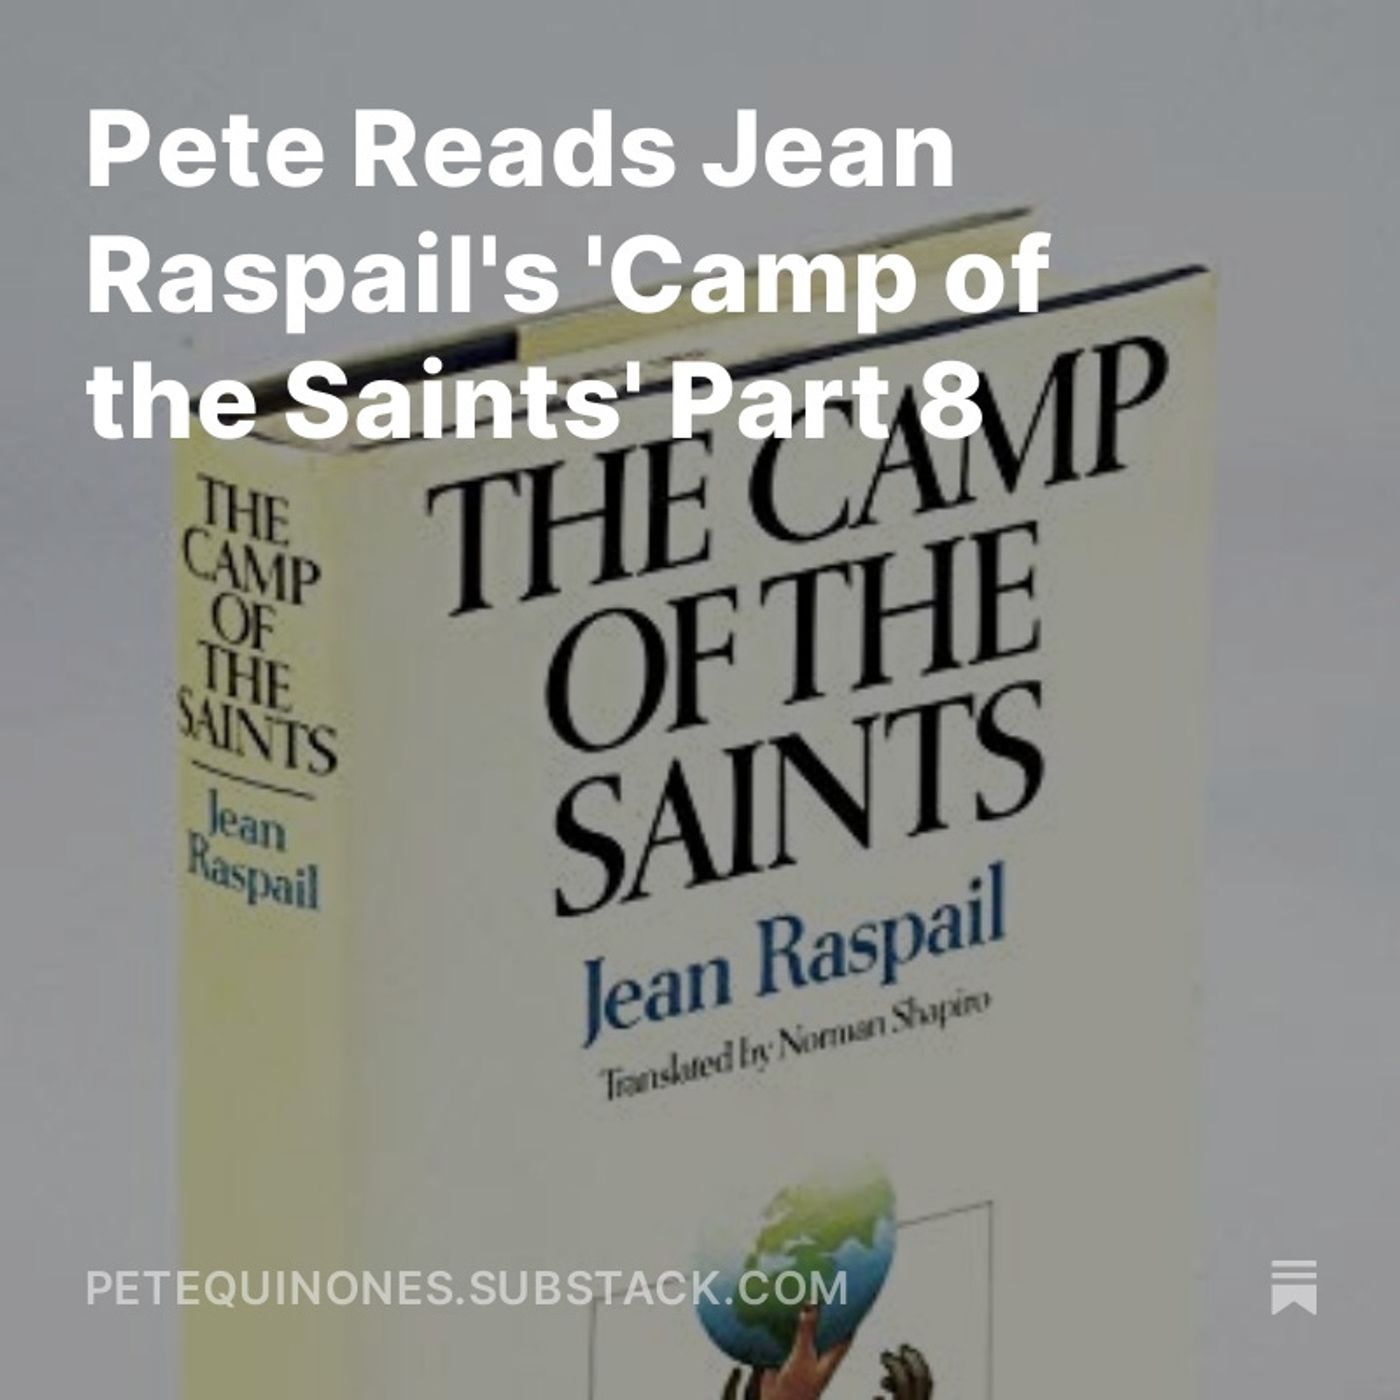 Pete Reads Jean Raspail’s ’Camp of the Saints’ Part 8